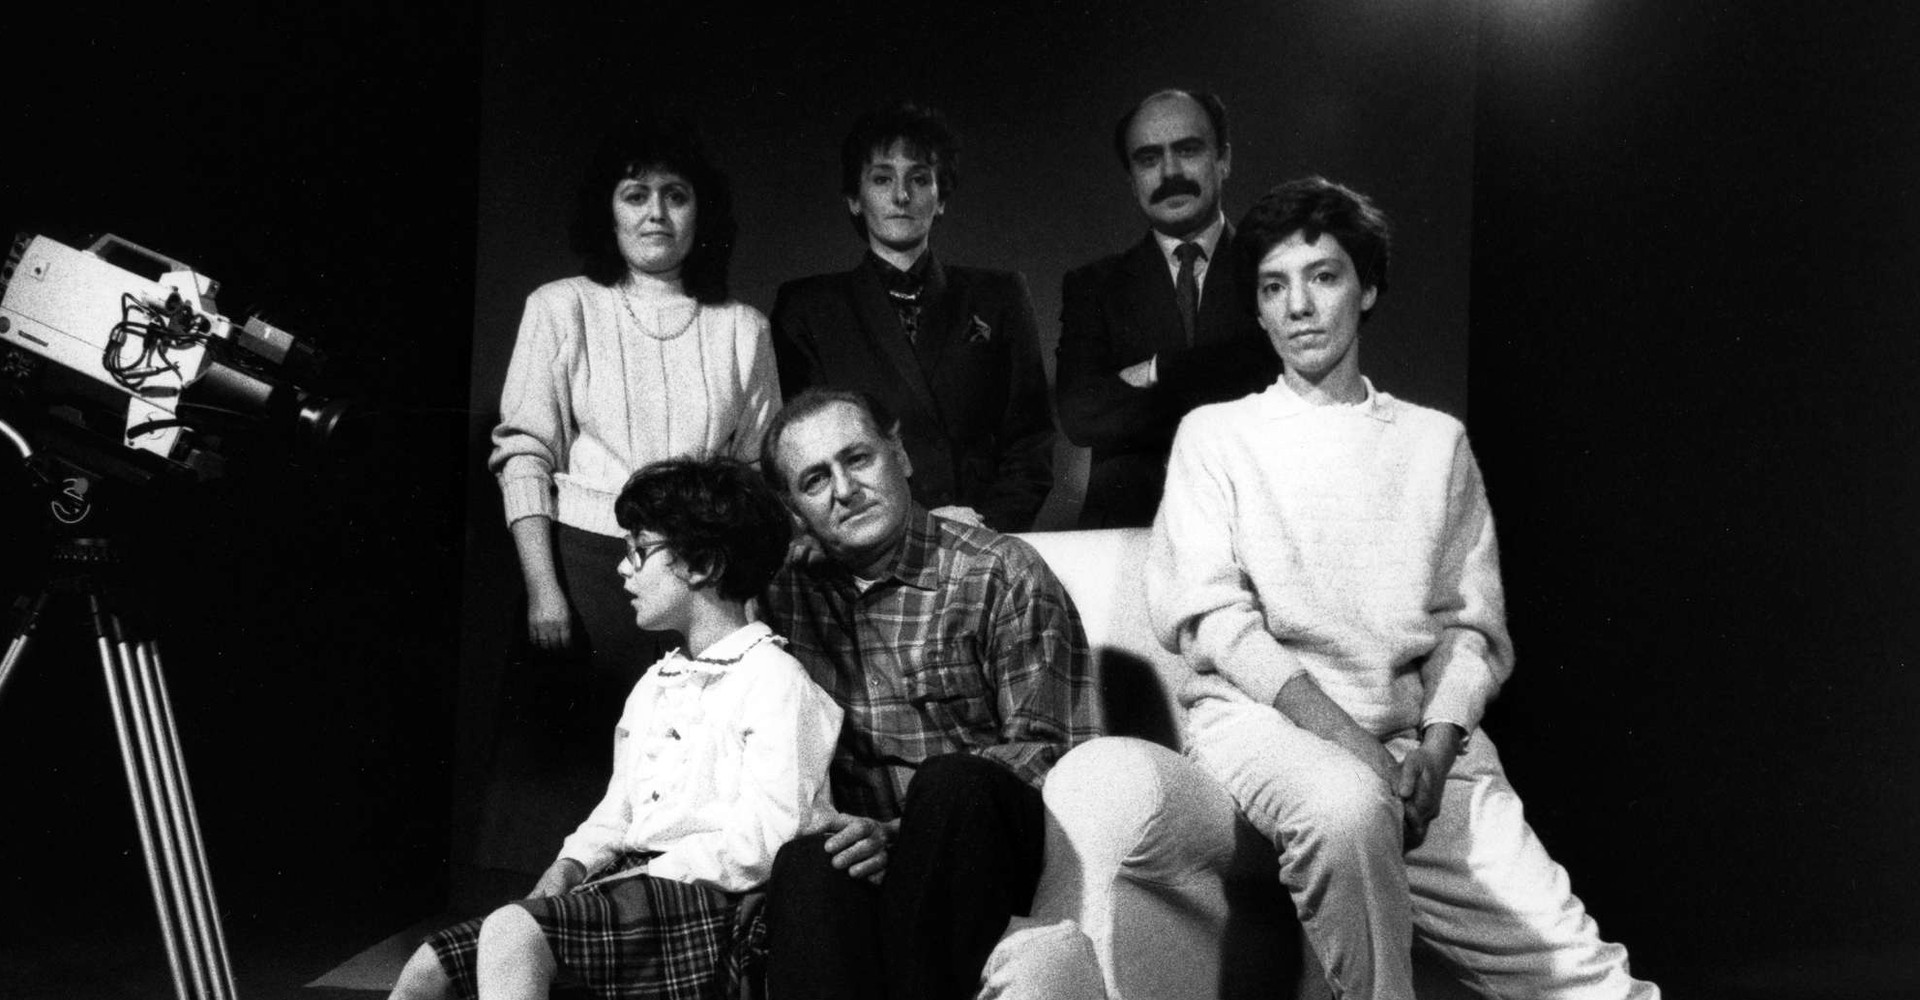 Foto in bianco e nero, scattata sul set di una campagna promozionale nel 1989. Si vede la macchina da presa e un gruppo di persone: tre sono sedute su una poltrona e sono una donna, Renzo Arbore e una bambina sordocieca; altre tre sono in piedi dietro di loro, si tratta di due donne e Rossano Bartoli.